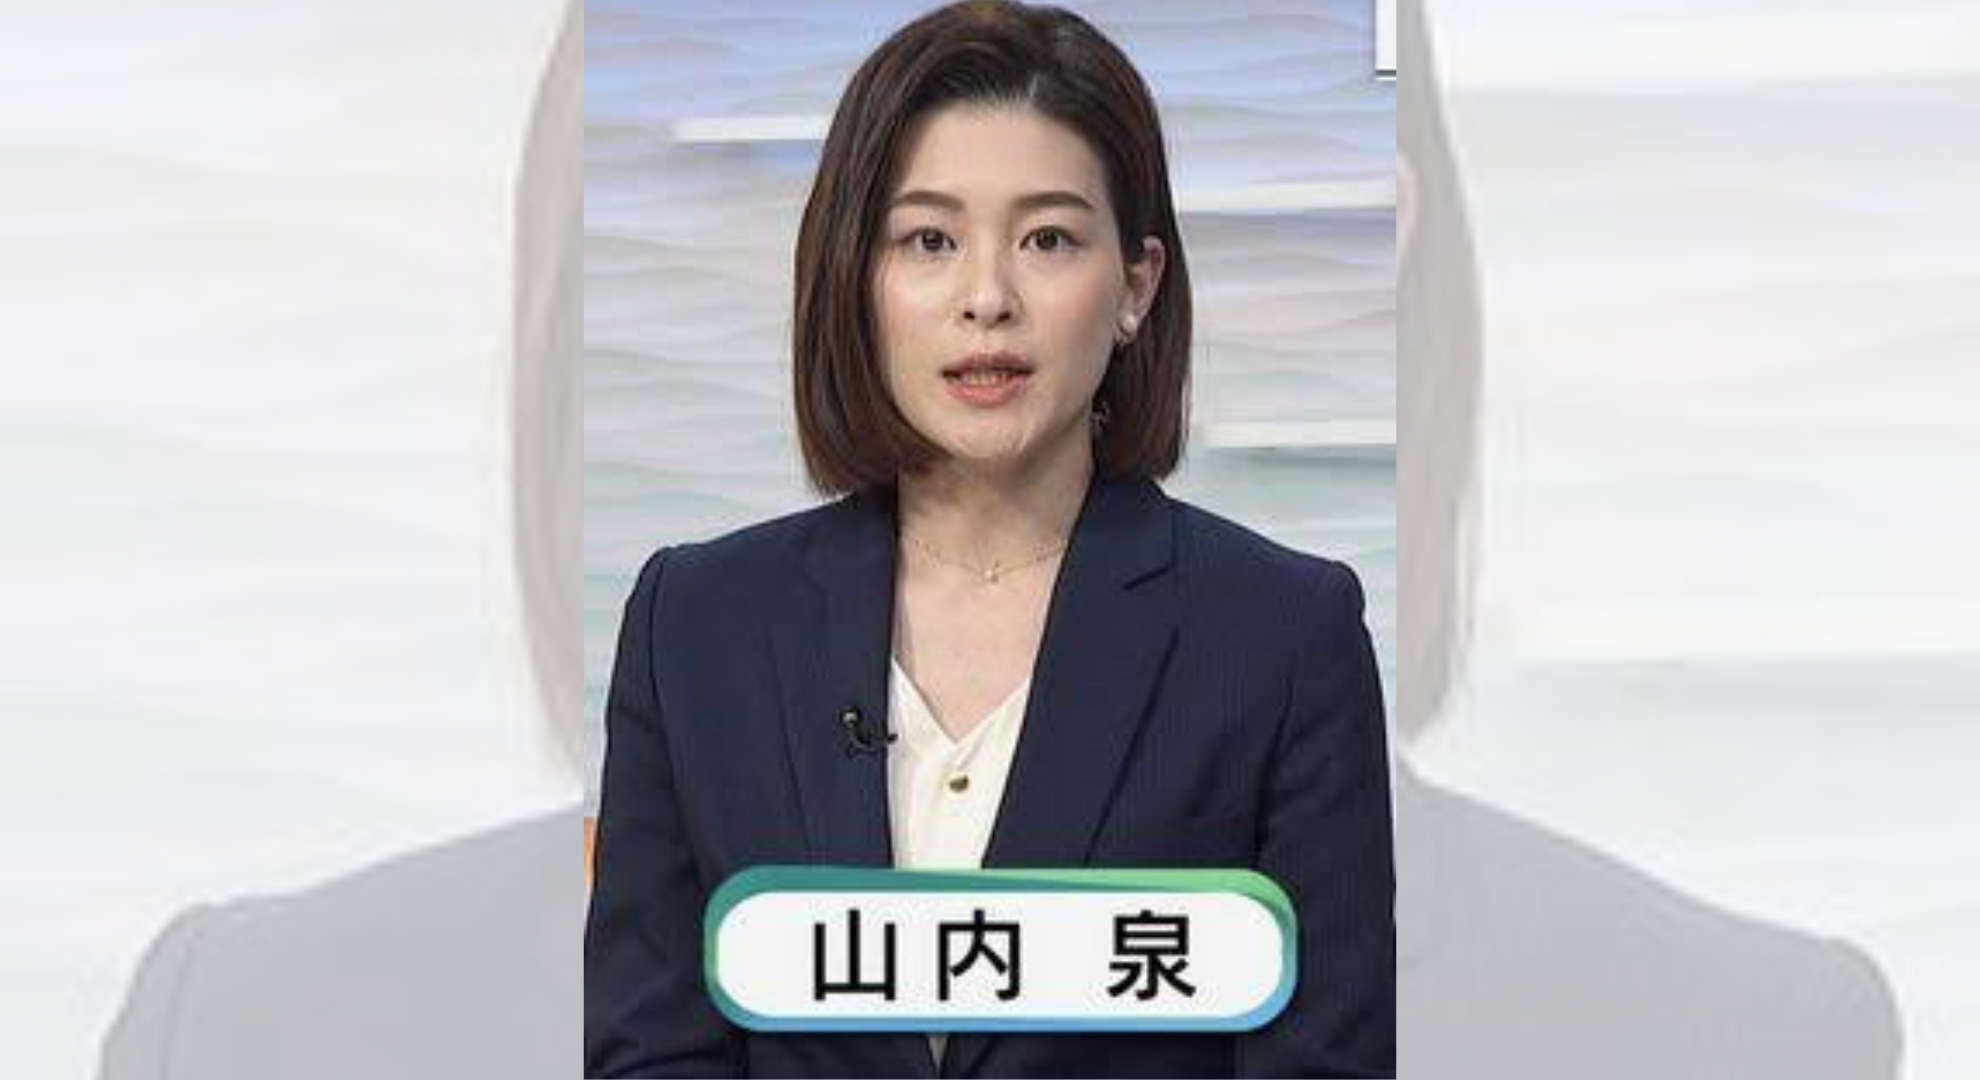 主播報導強震太激動遭質疑不專業NHK否認給出說明